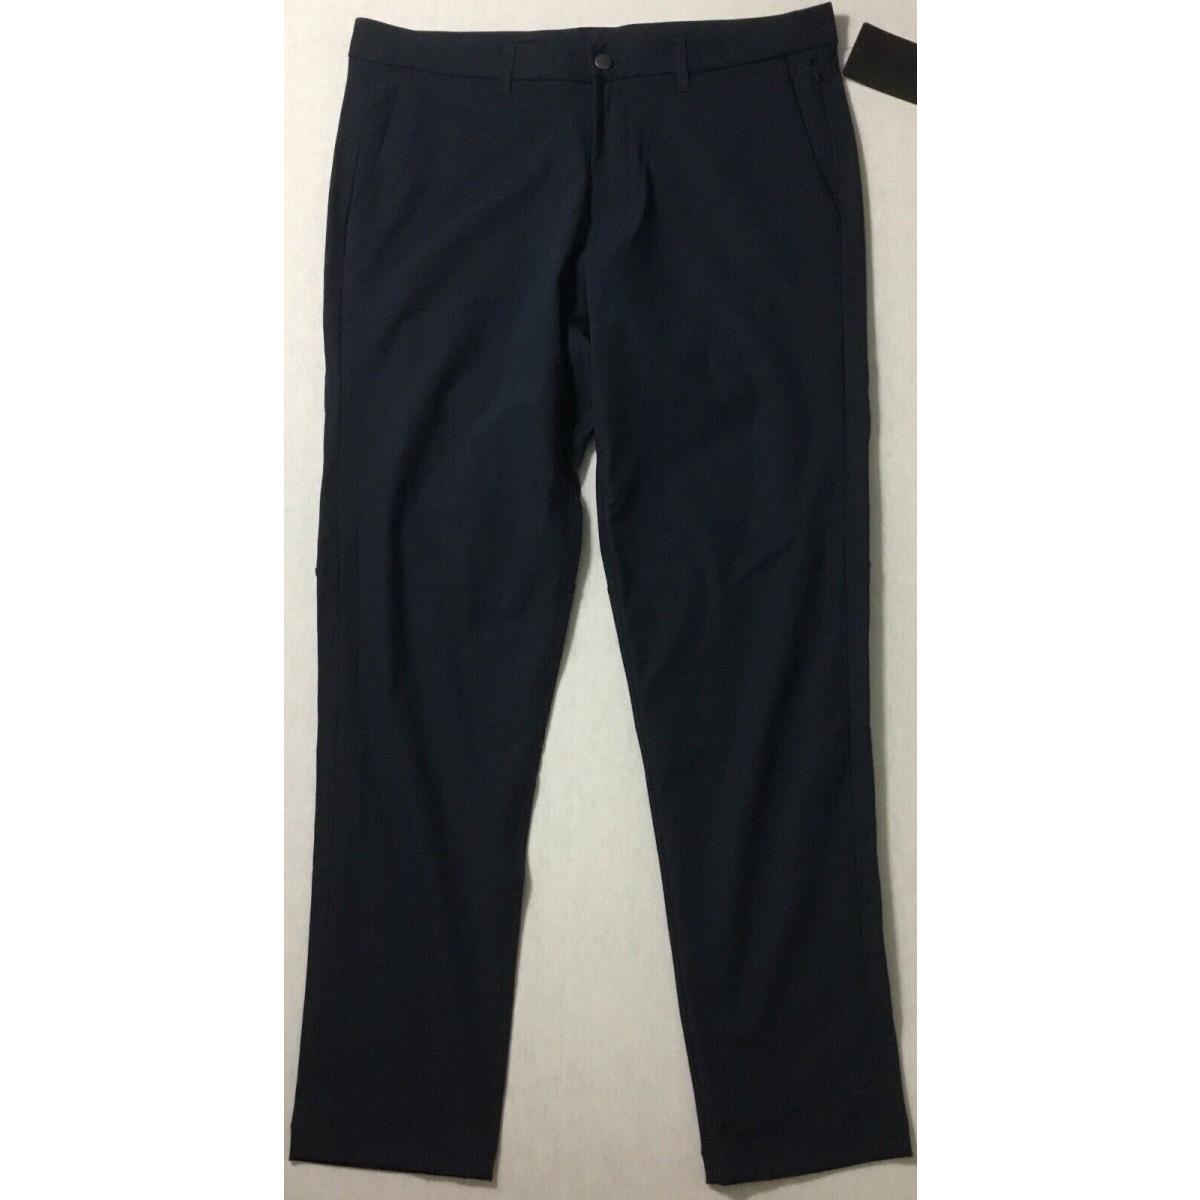 Lululemon Men s Pants Commission Pant Slim 34 L LM5439S Trnv True Navy Size 33